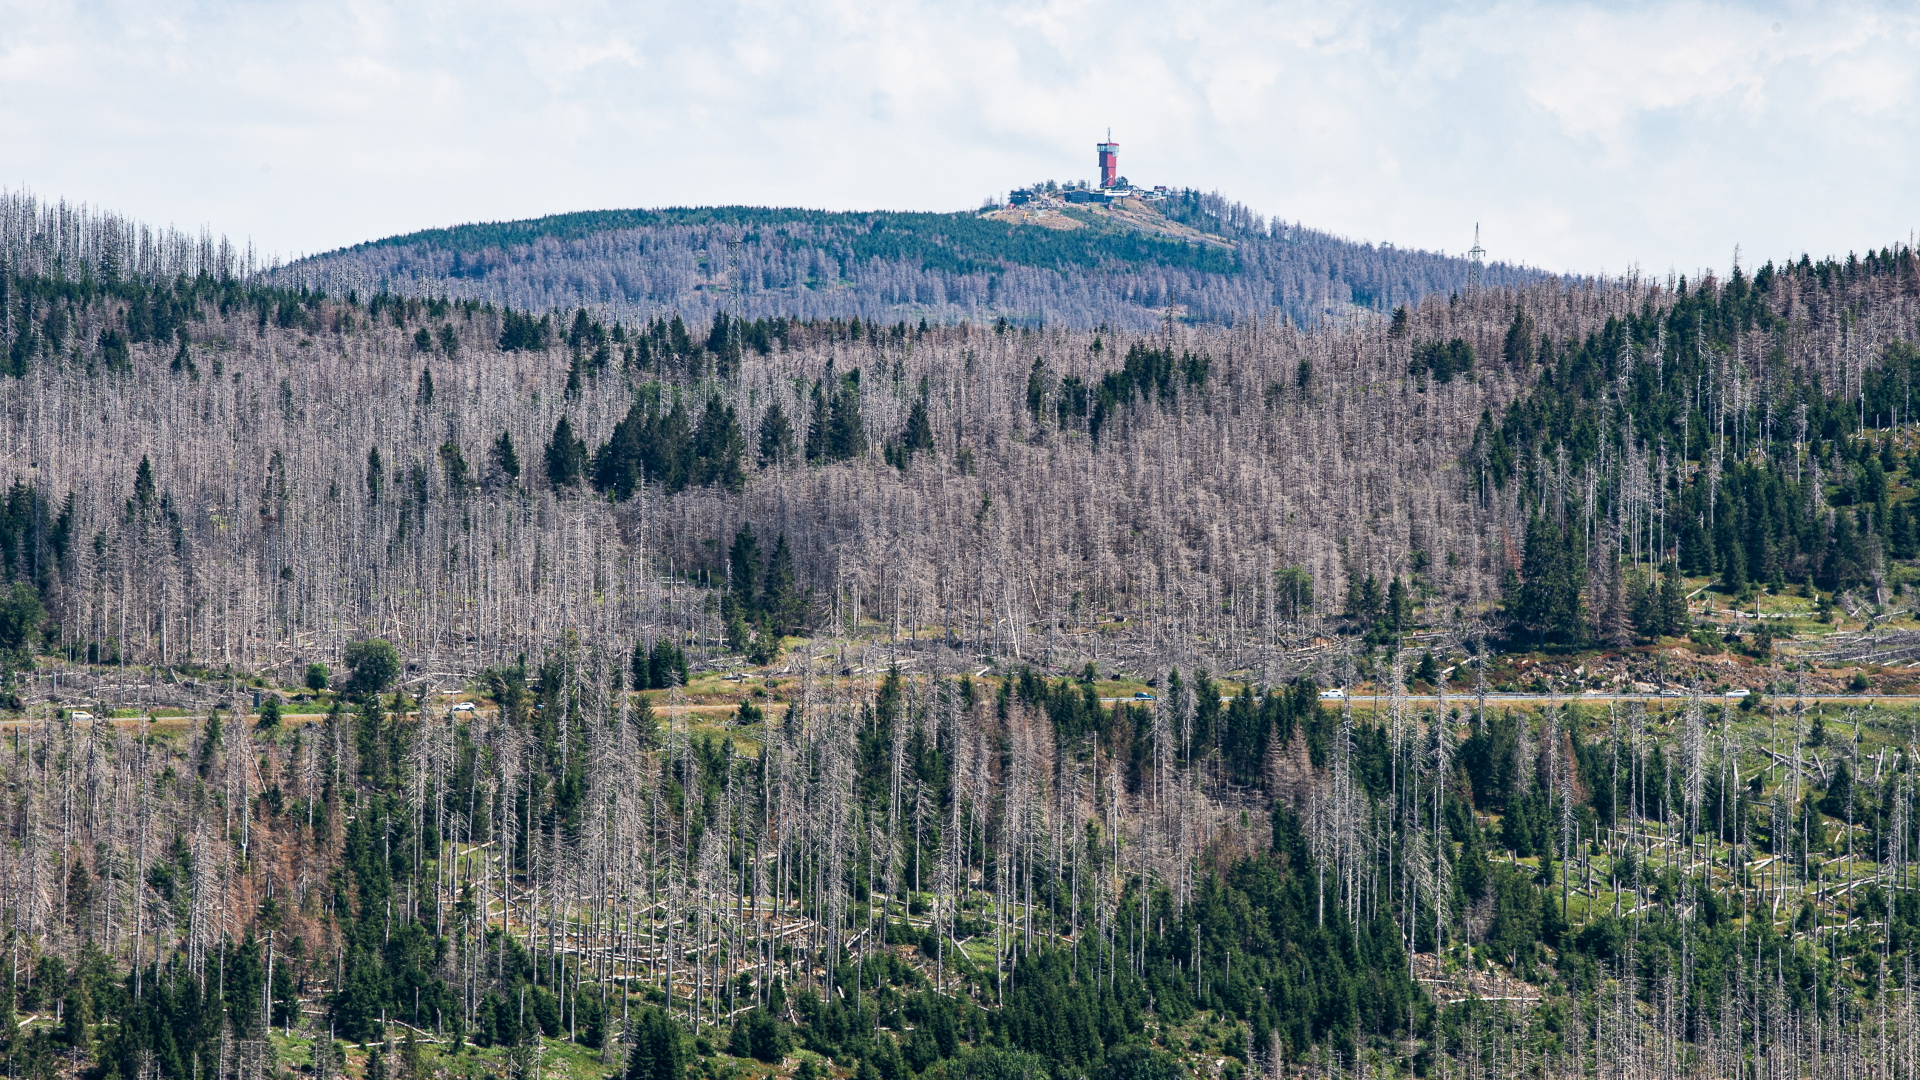 Niedersachsens höchster Berg, der Wurmberg bei Braunlage, ist mit dem Wurmberg-Turm hinter zahlreichen abgestorbenen Fichten zu sehen.  | dpa